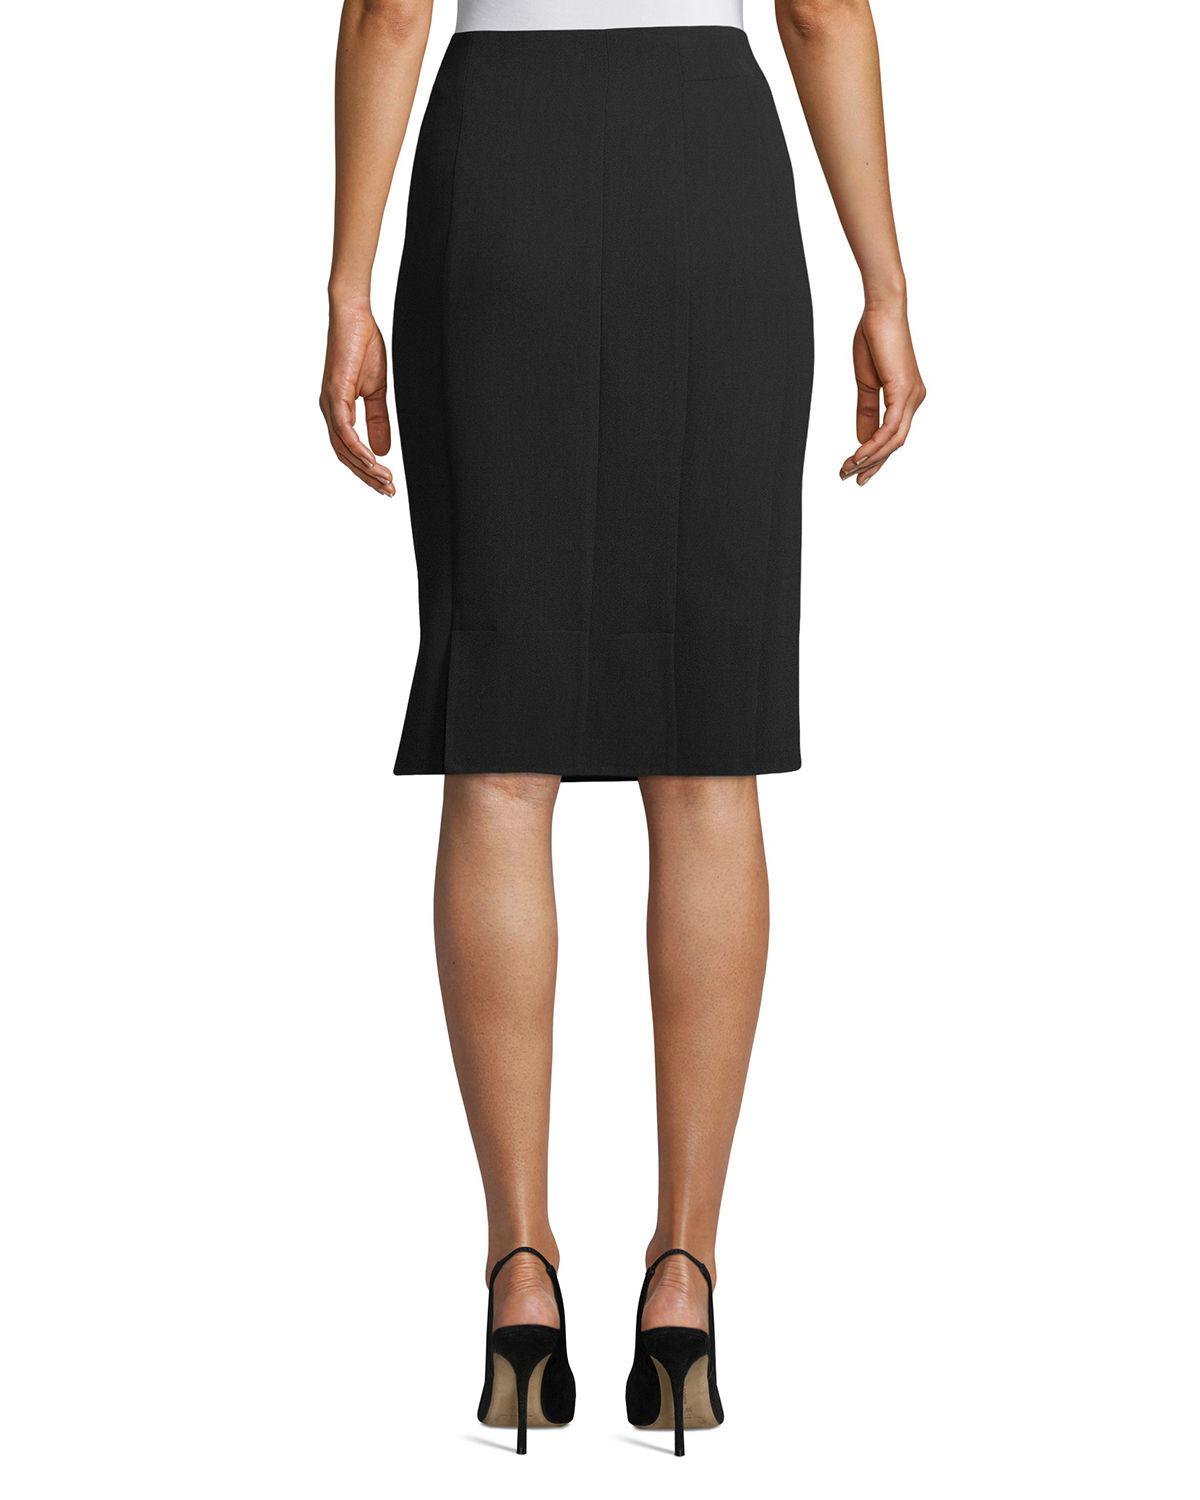 Lyst - Akris Wool-blend Knee-length Pencil Skirt in Black